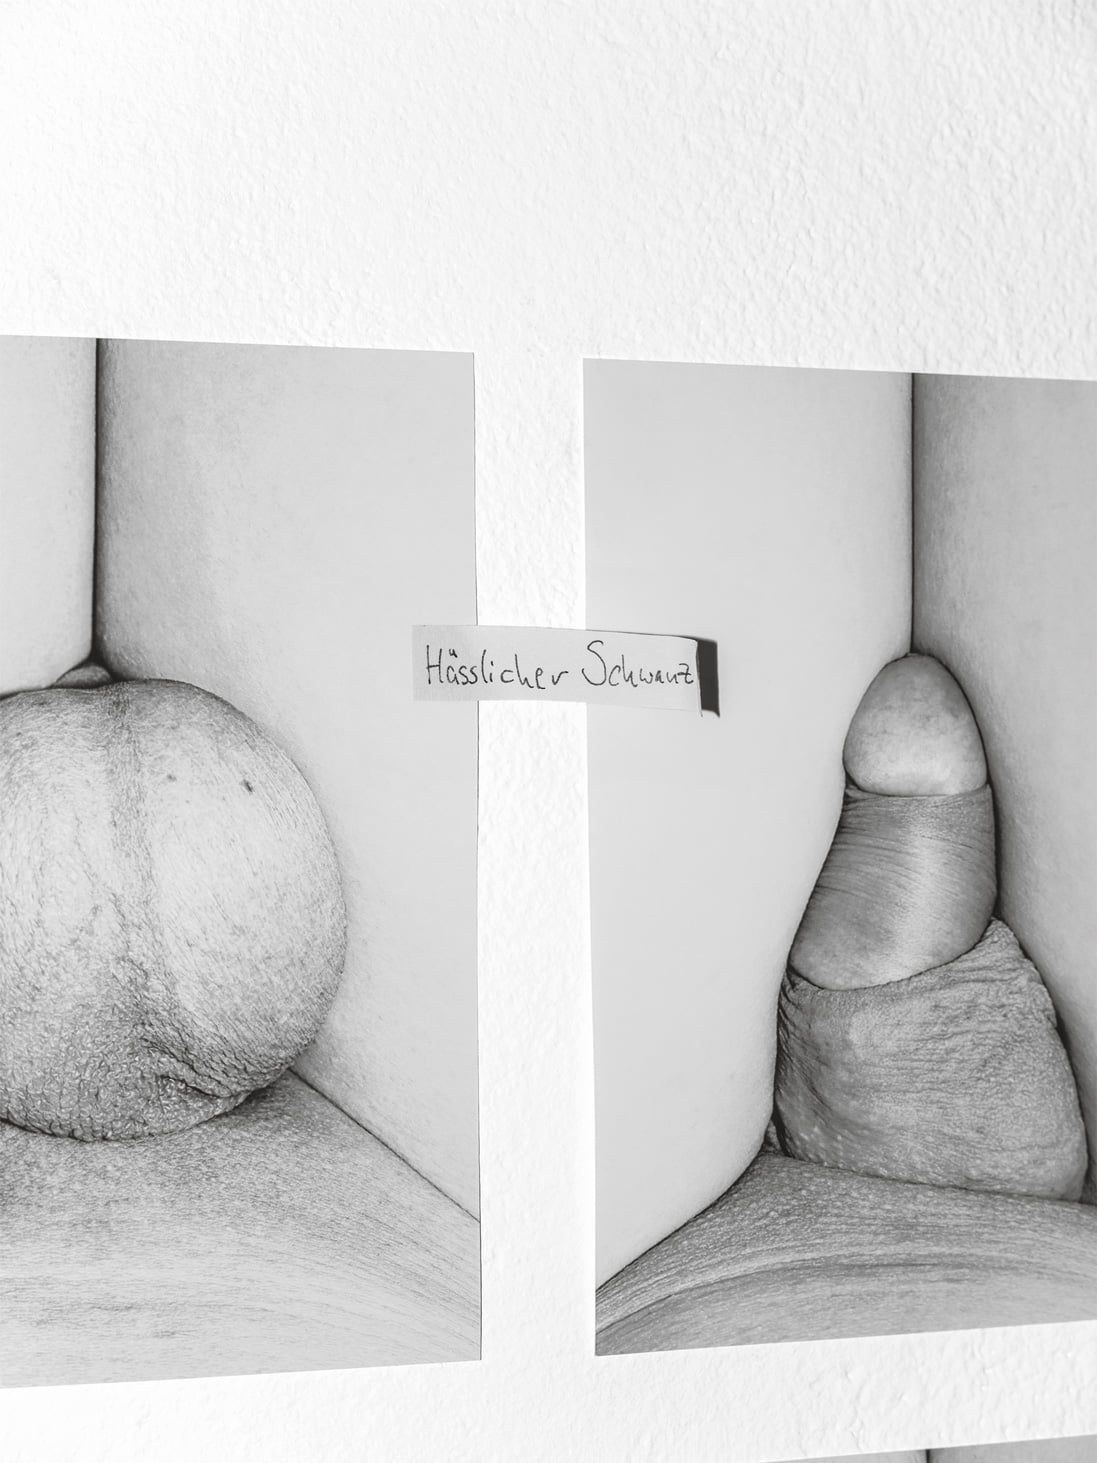 Hayahisa Tomiyasu | Hässlicher Schwanz / Reaktion 3, 2015 | 18,7 x 25 cm, 1 Bild, Pigment Print